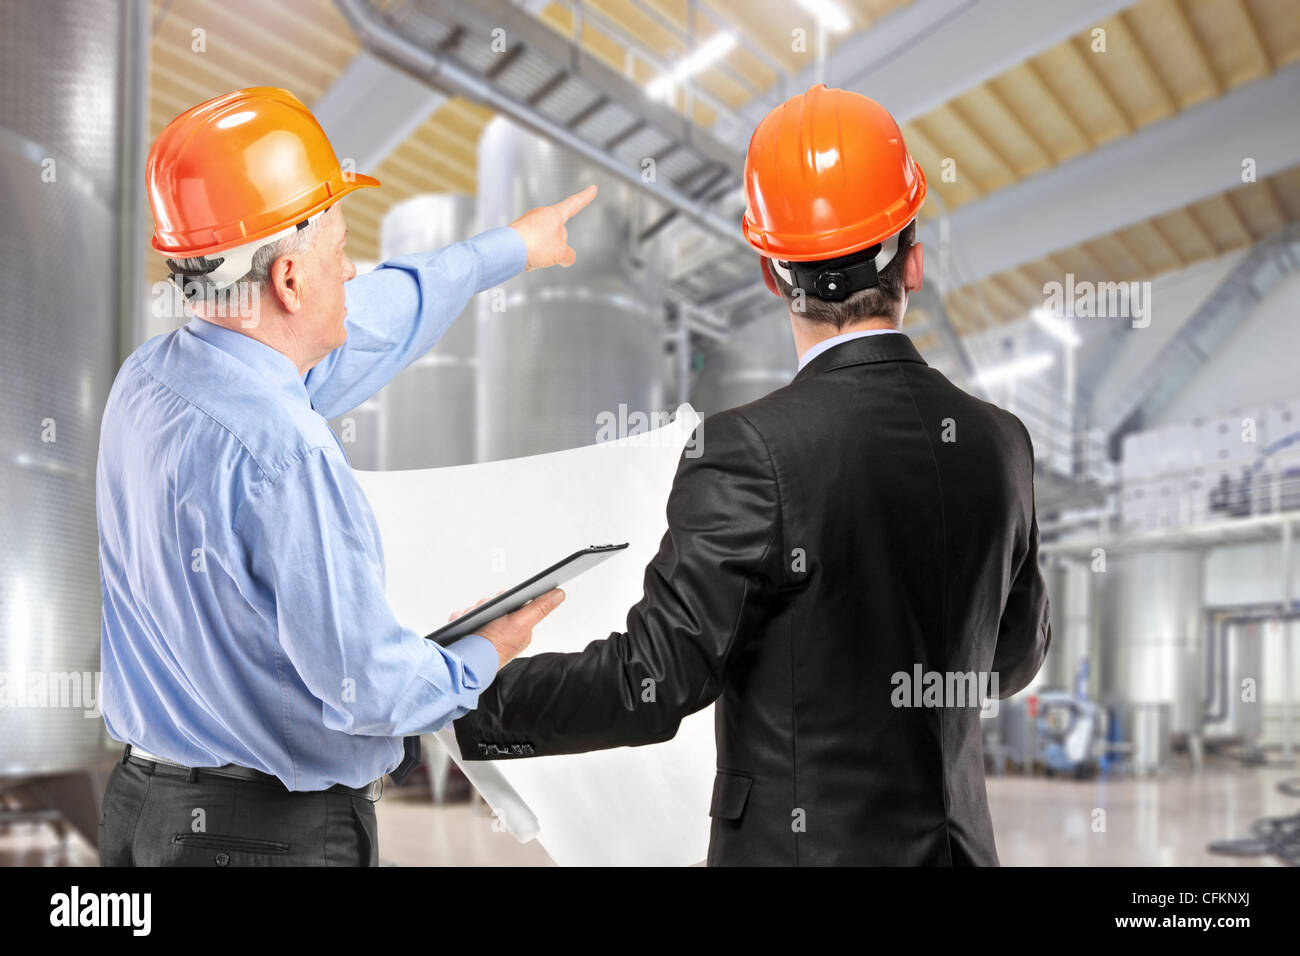 Une équipe de travailleurs de la construction avec un casque orange sur le lieu de travail dans une usine Banque D'Images